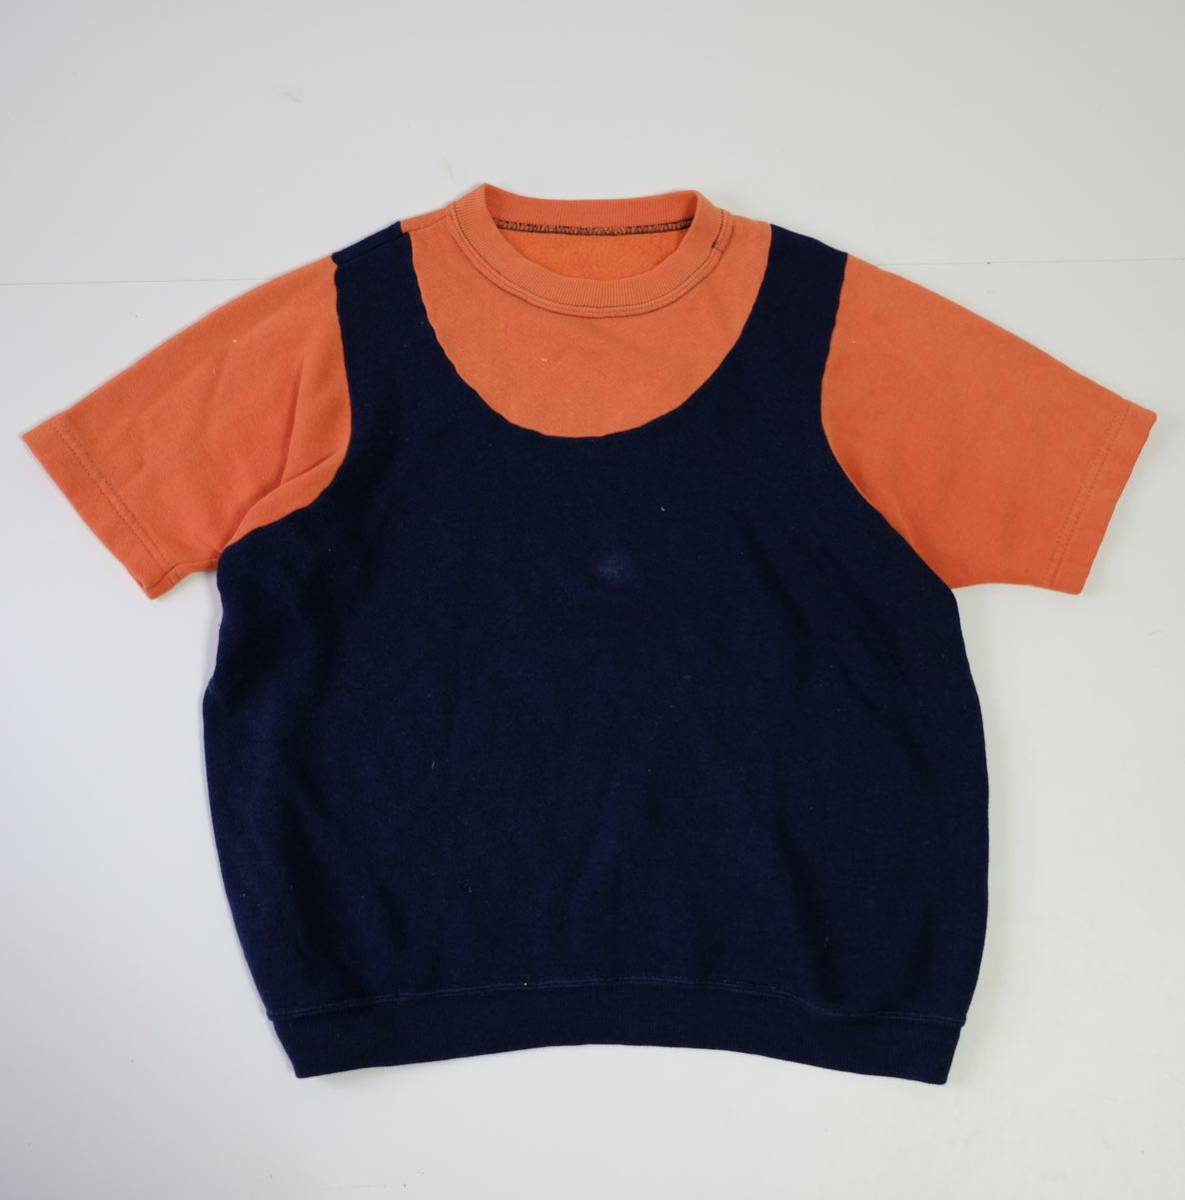 [1960~70s] Vintage 2 цветный короткий рукав спортивная фуфайка футболка б/у одежда лоскутное шитье дизайн USA производства за границей запас 